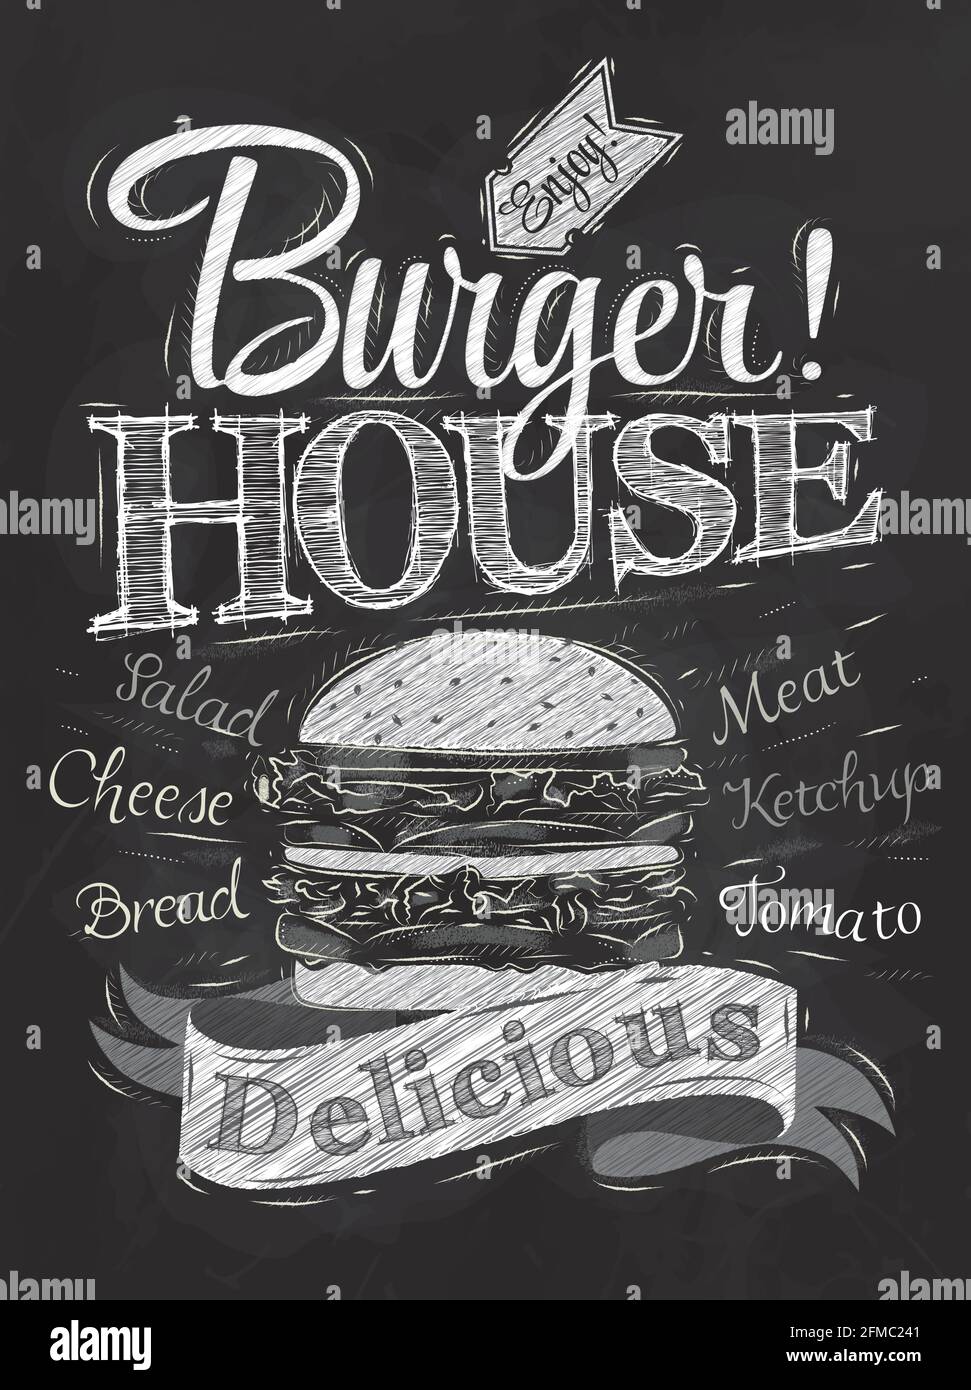 Posterbeschriftung Burger House mit einem Hamburger bemalt und Aufschriften stilisierte Zeichnung mit Kreide auf Tafel. Stock Vektor